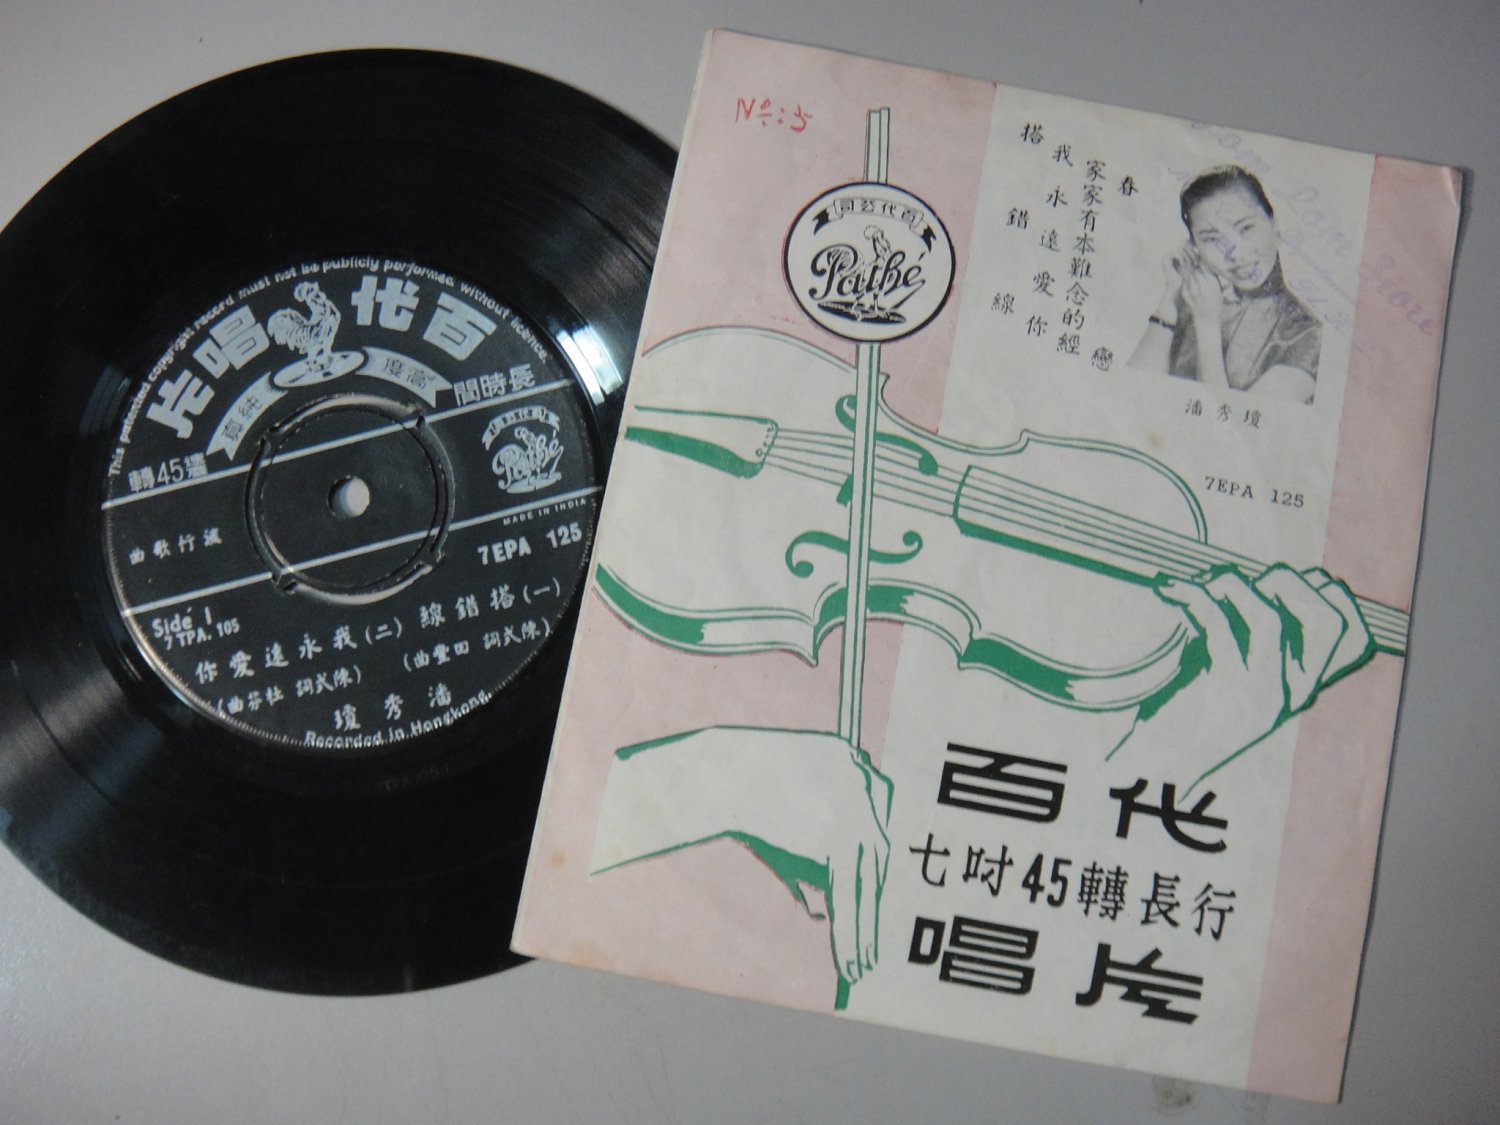 (1992) Hong Kong China Chinese 7" EP - POON SOW KENG æ½�ç§�ç��  7epa125